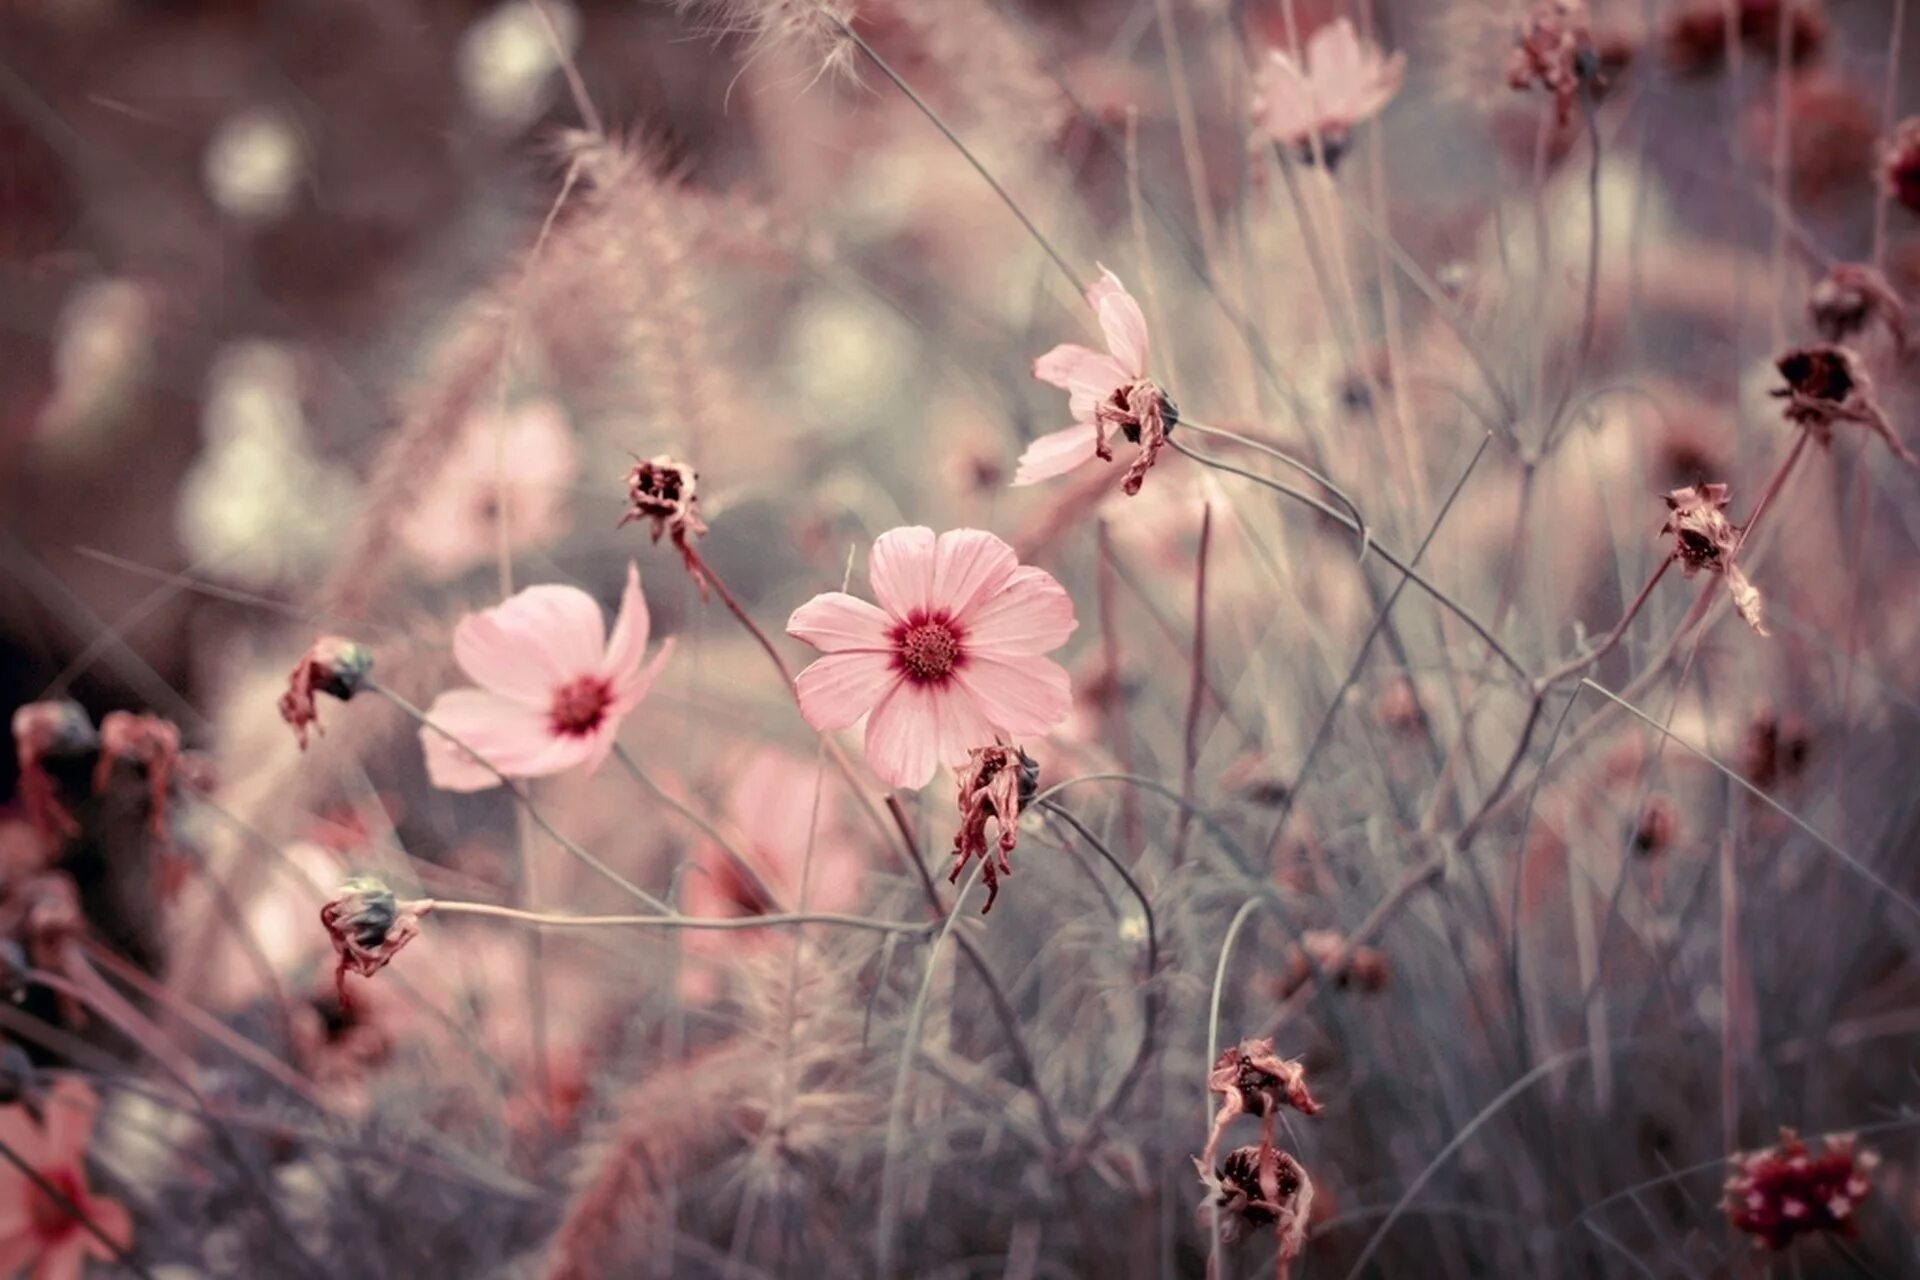 Обои на телефон эстетика лето. Нежный цветок. Розовые цветы. Цветы в пастельных тонах. Бежевые цветы.